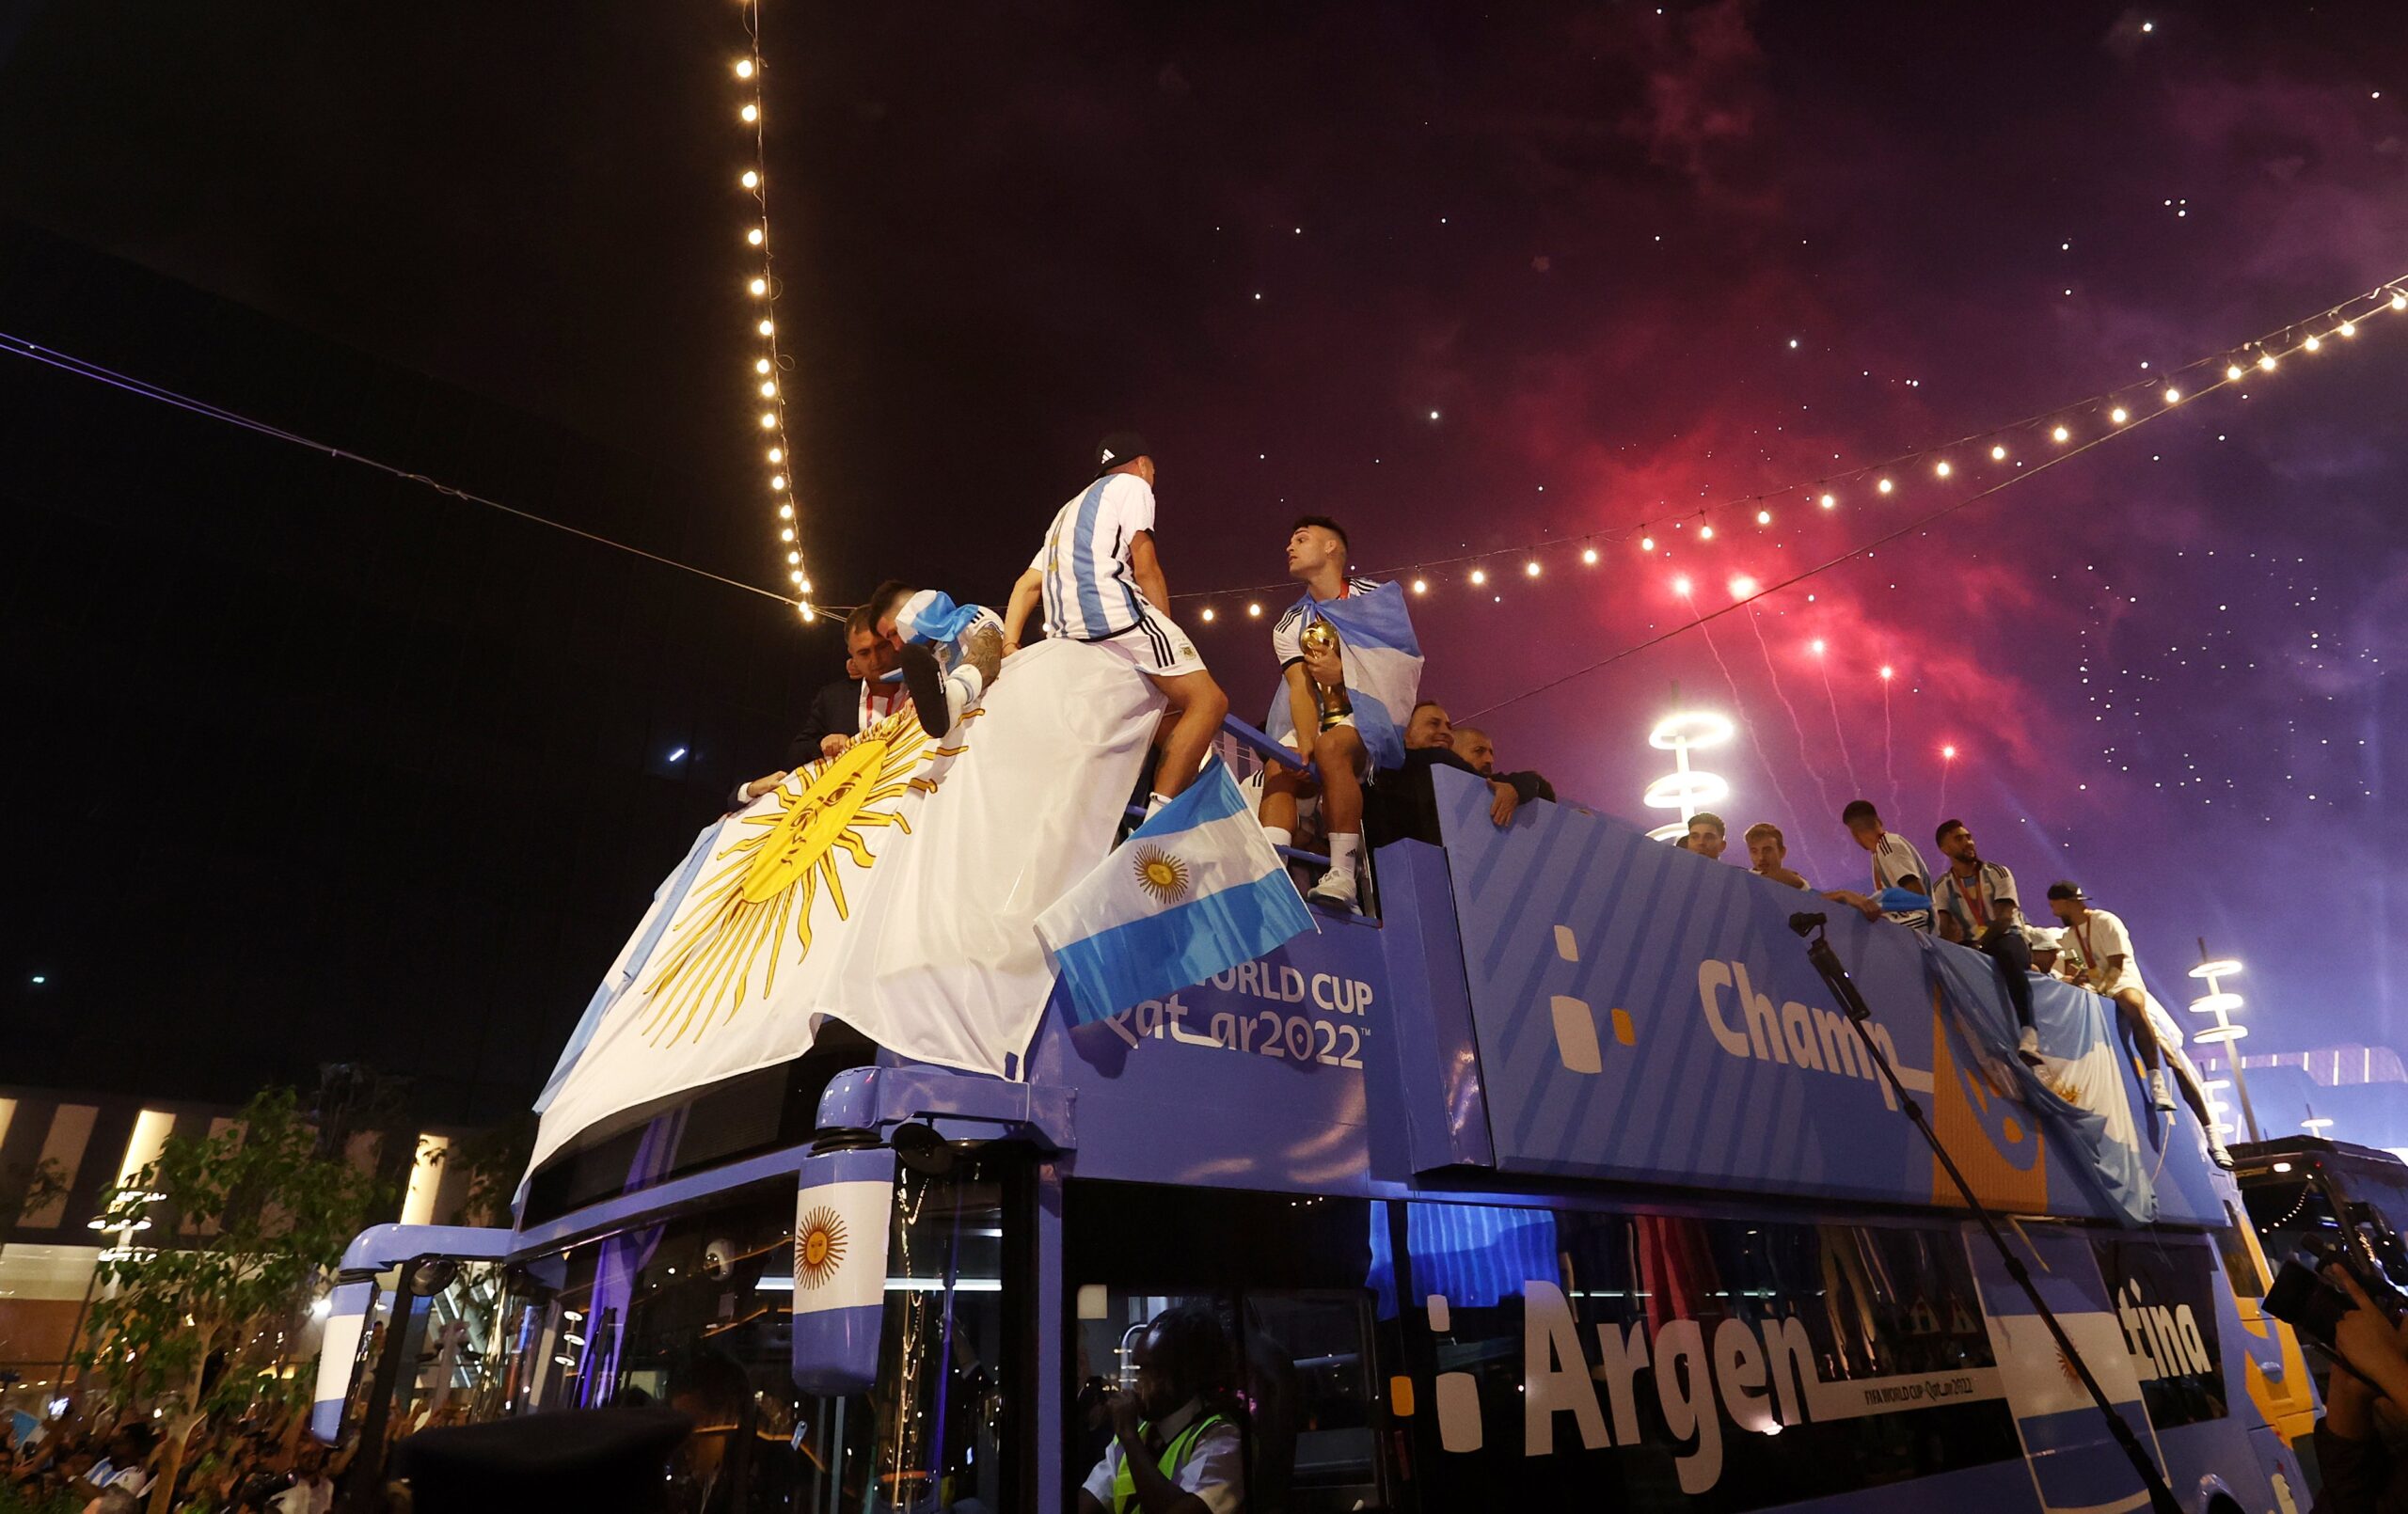 La Selección Argentina festejó por las calles de Qatar